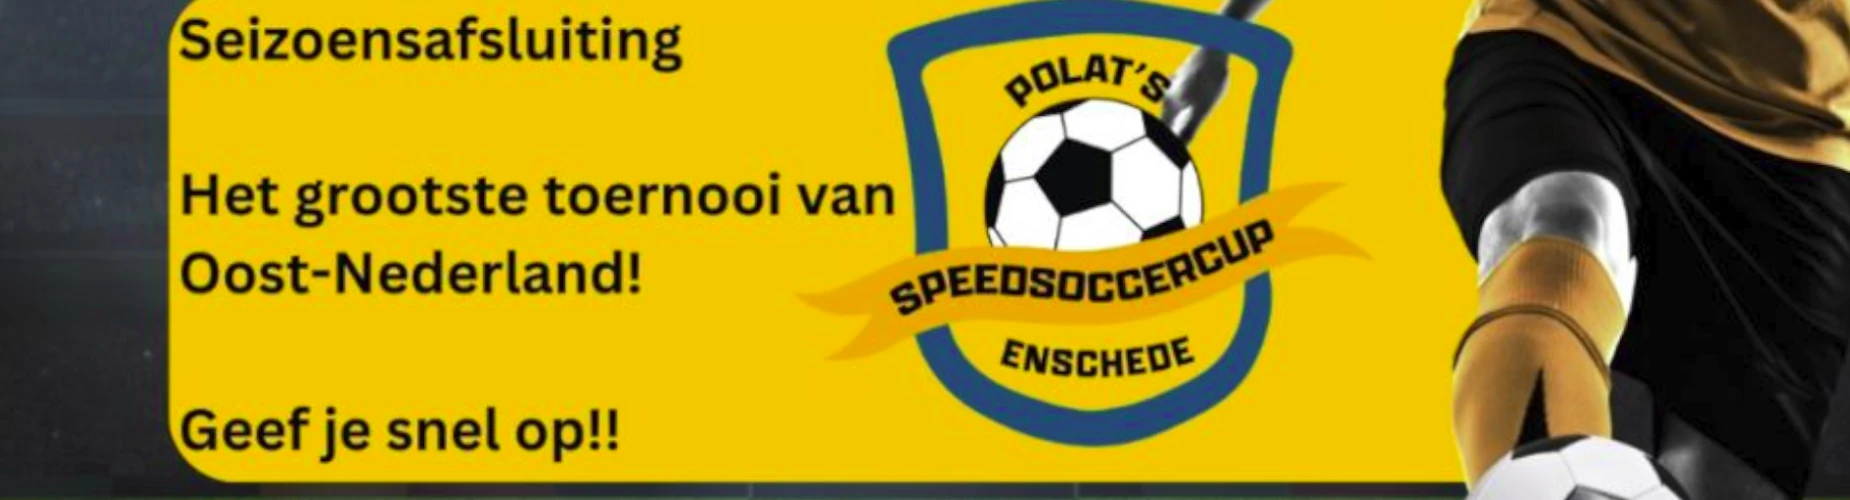 Banner - O9 - Polat’s Speedsoccercup - Sparta Enschede - Enschede